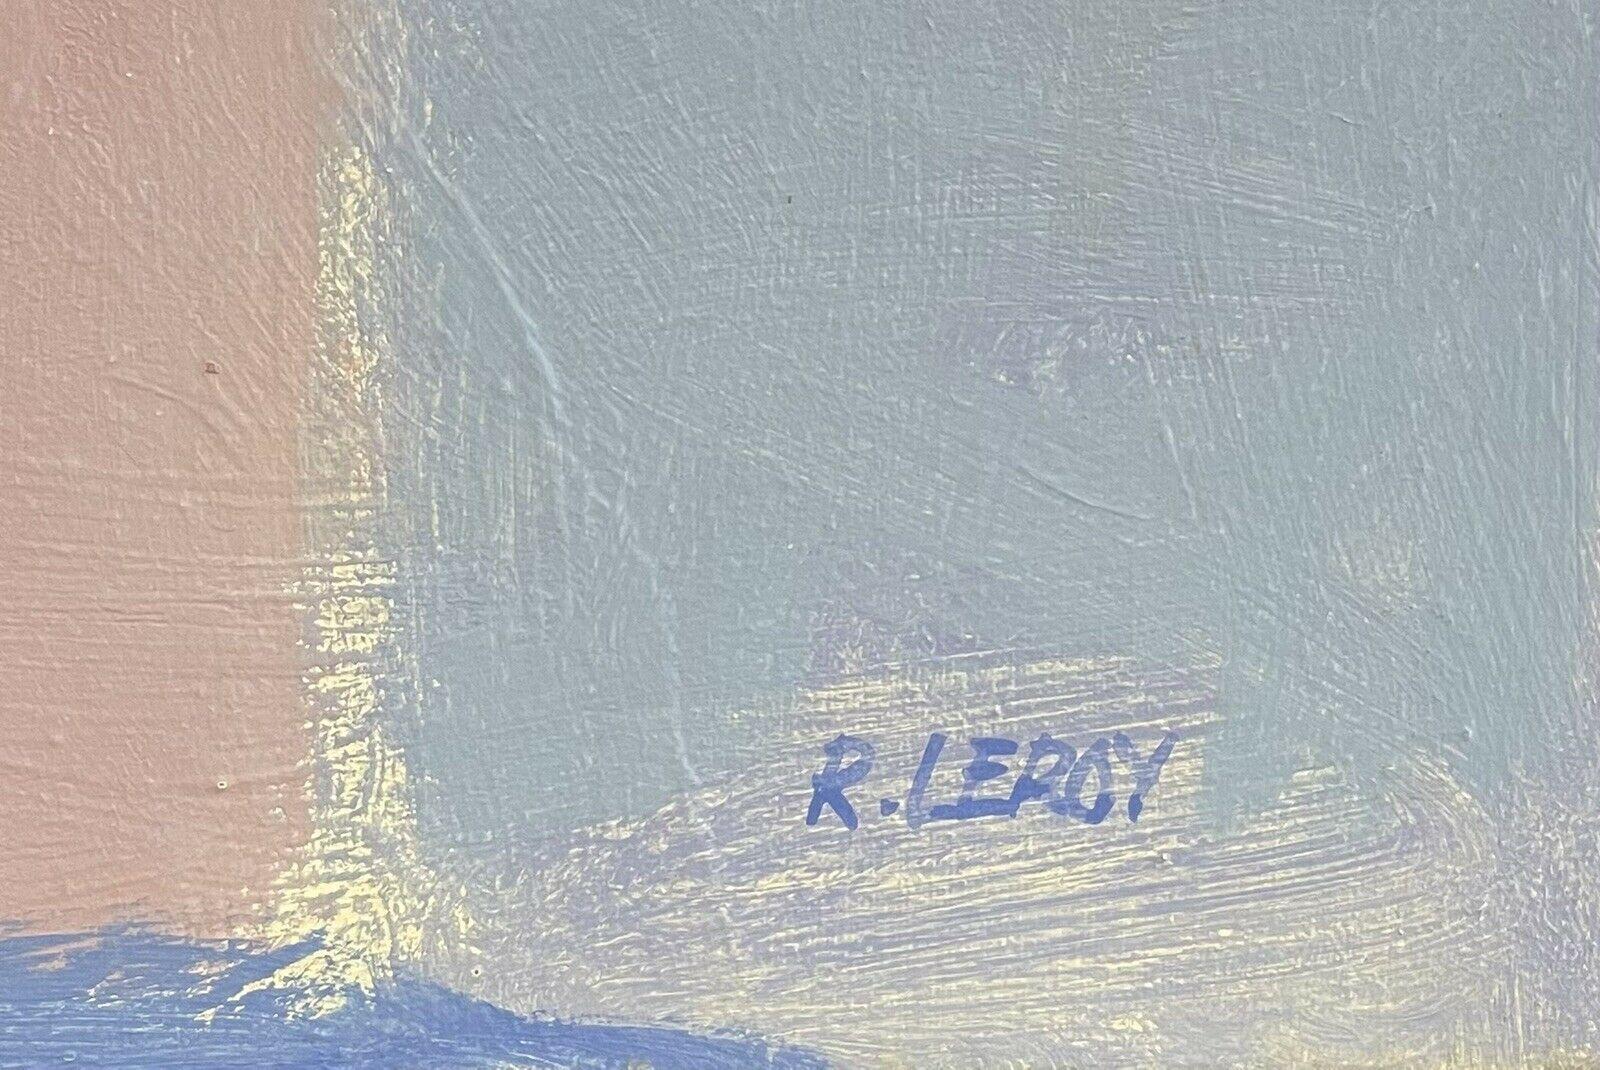 Artiste/École : René Leroy (français né en 1932) signé

Titre : Composition abstraite/ cubiste

Moyen :  huile sur toile, signée 

Taille :      peinture :  21.25 x 28.75 pouces

Provenance : toutes les peintures que nous avons à vendre de cet